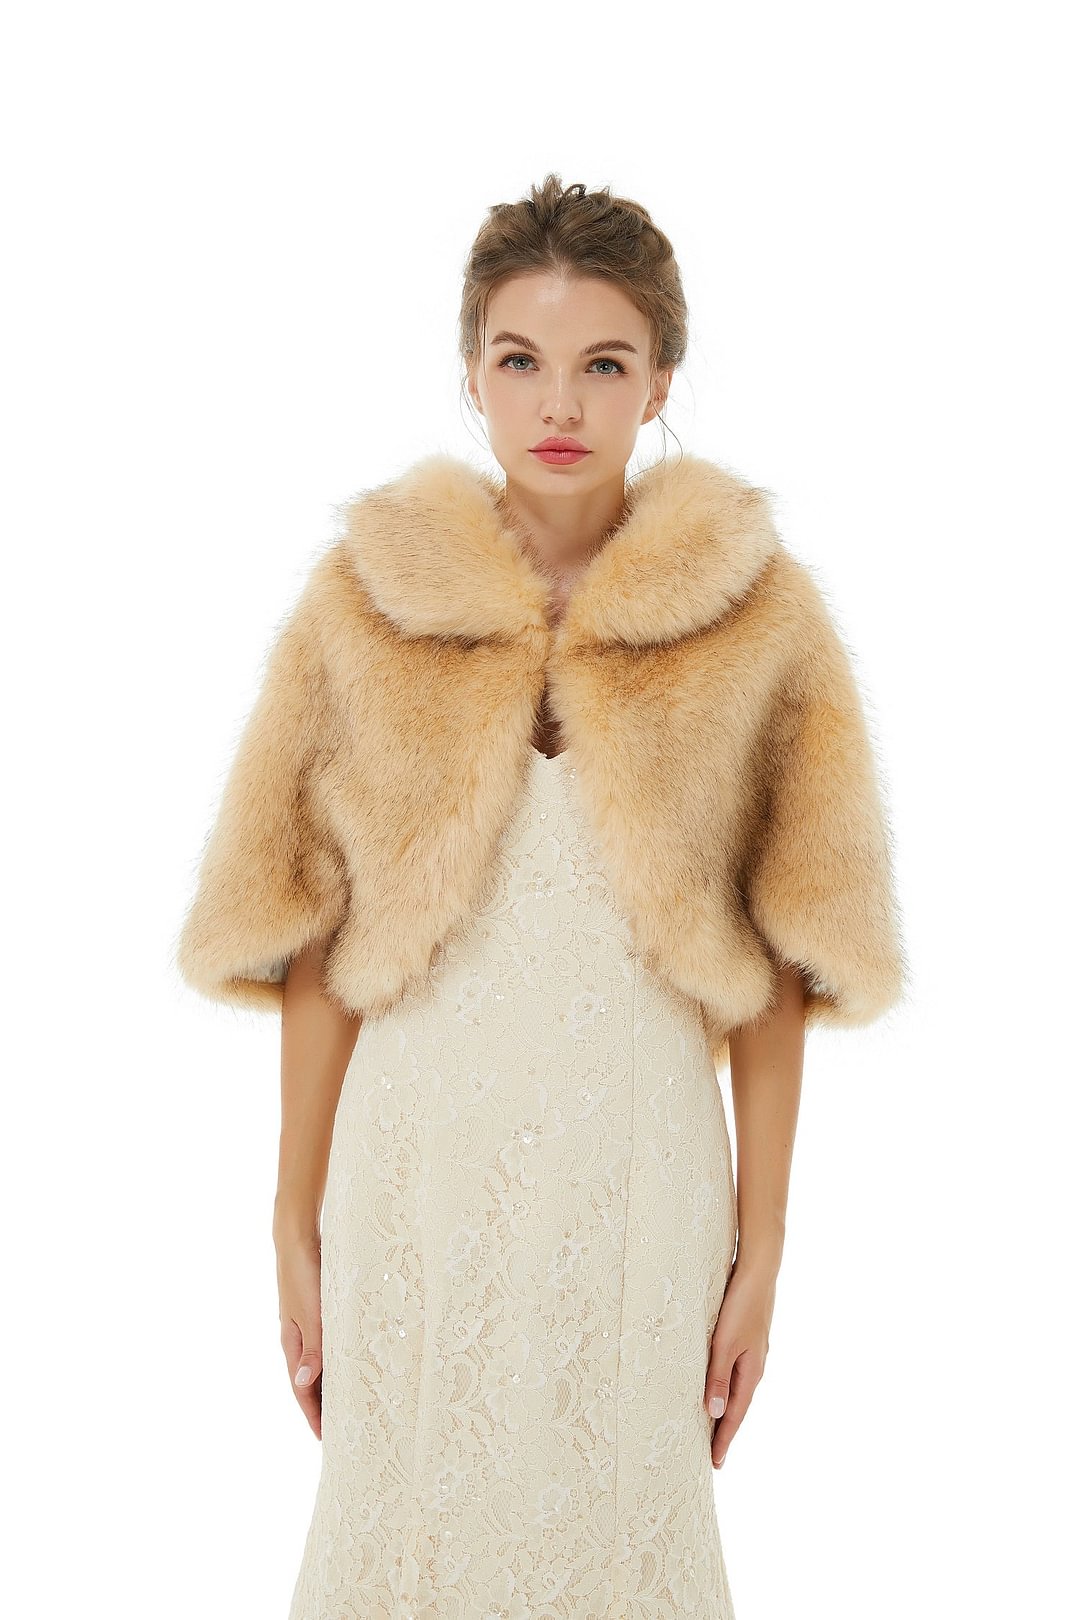 Luluslly Faux Fur Wrap Bridal Wear Winter Jacket